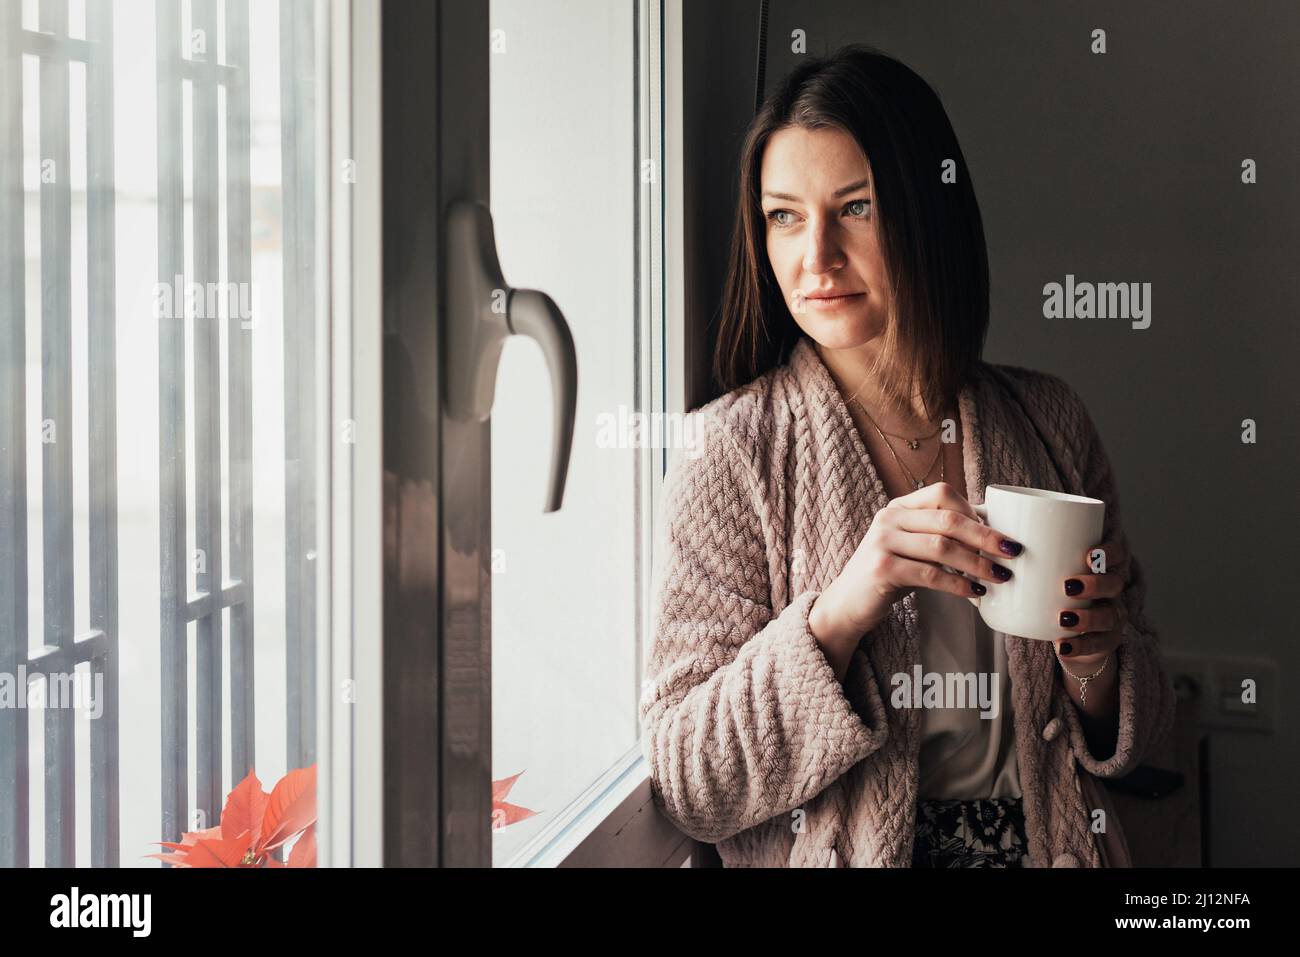 Donna rilassata che tiene una tazza di caffè mentre guarda attraverso una finestra. Foto Stock